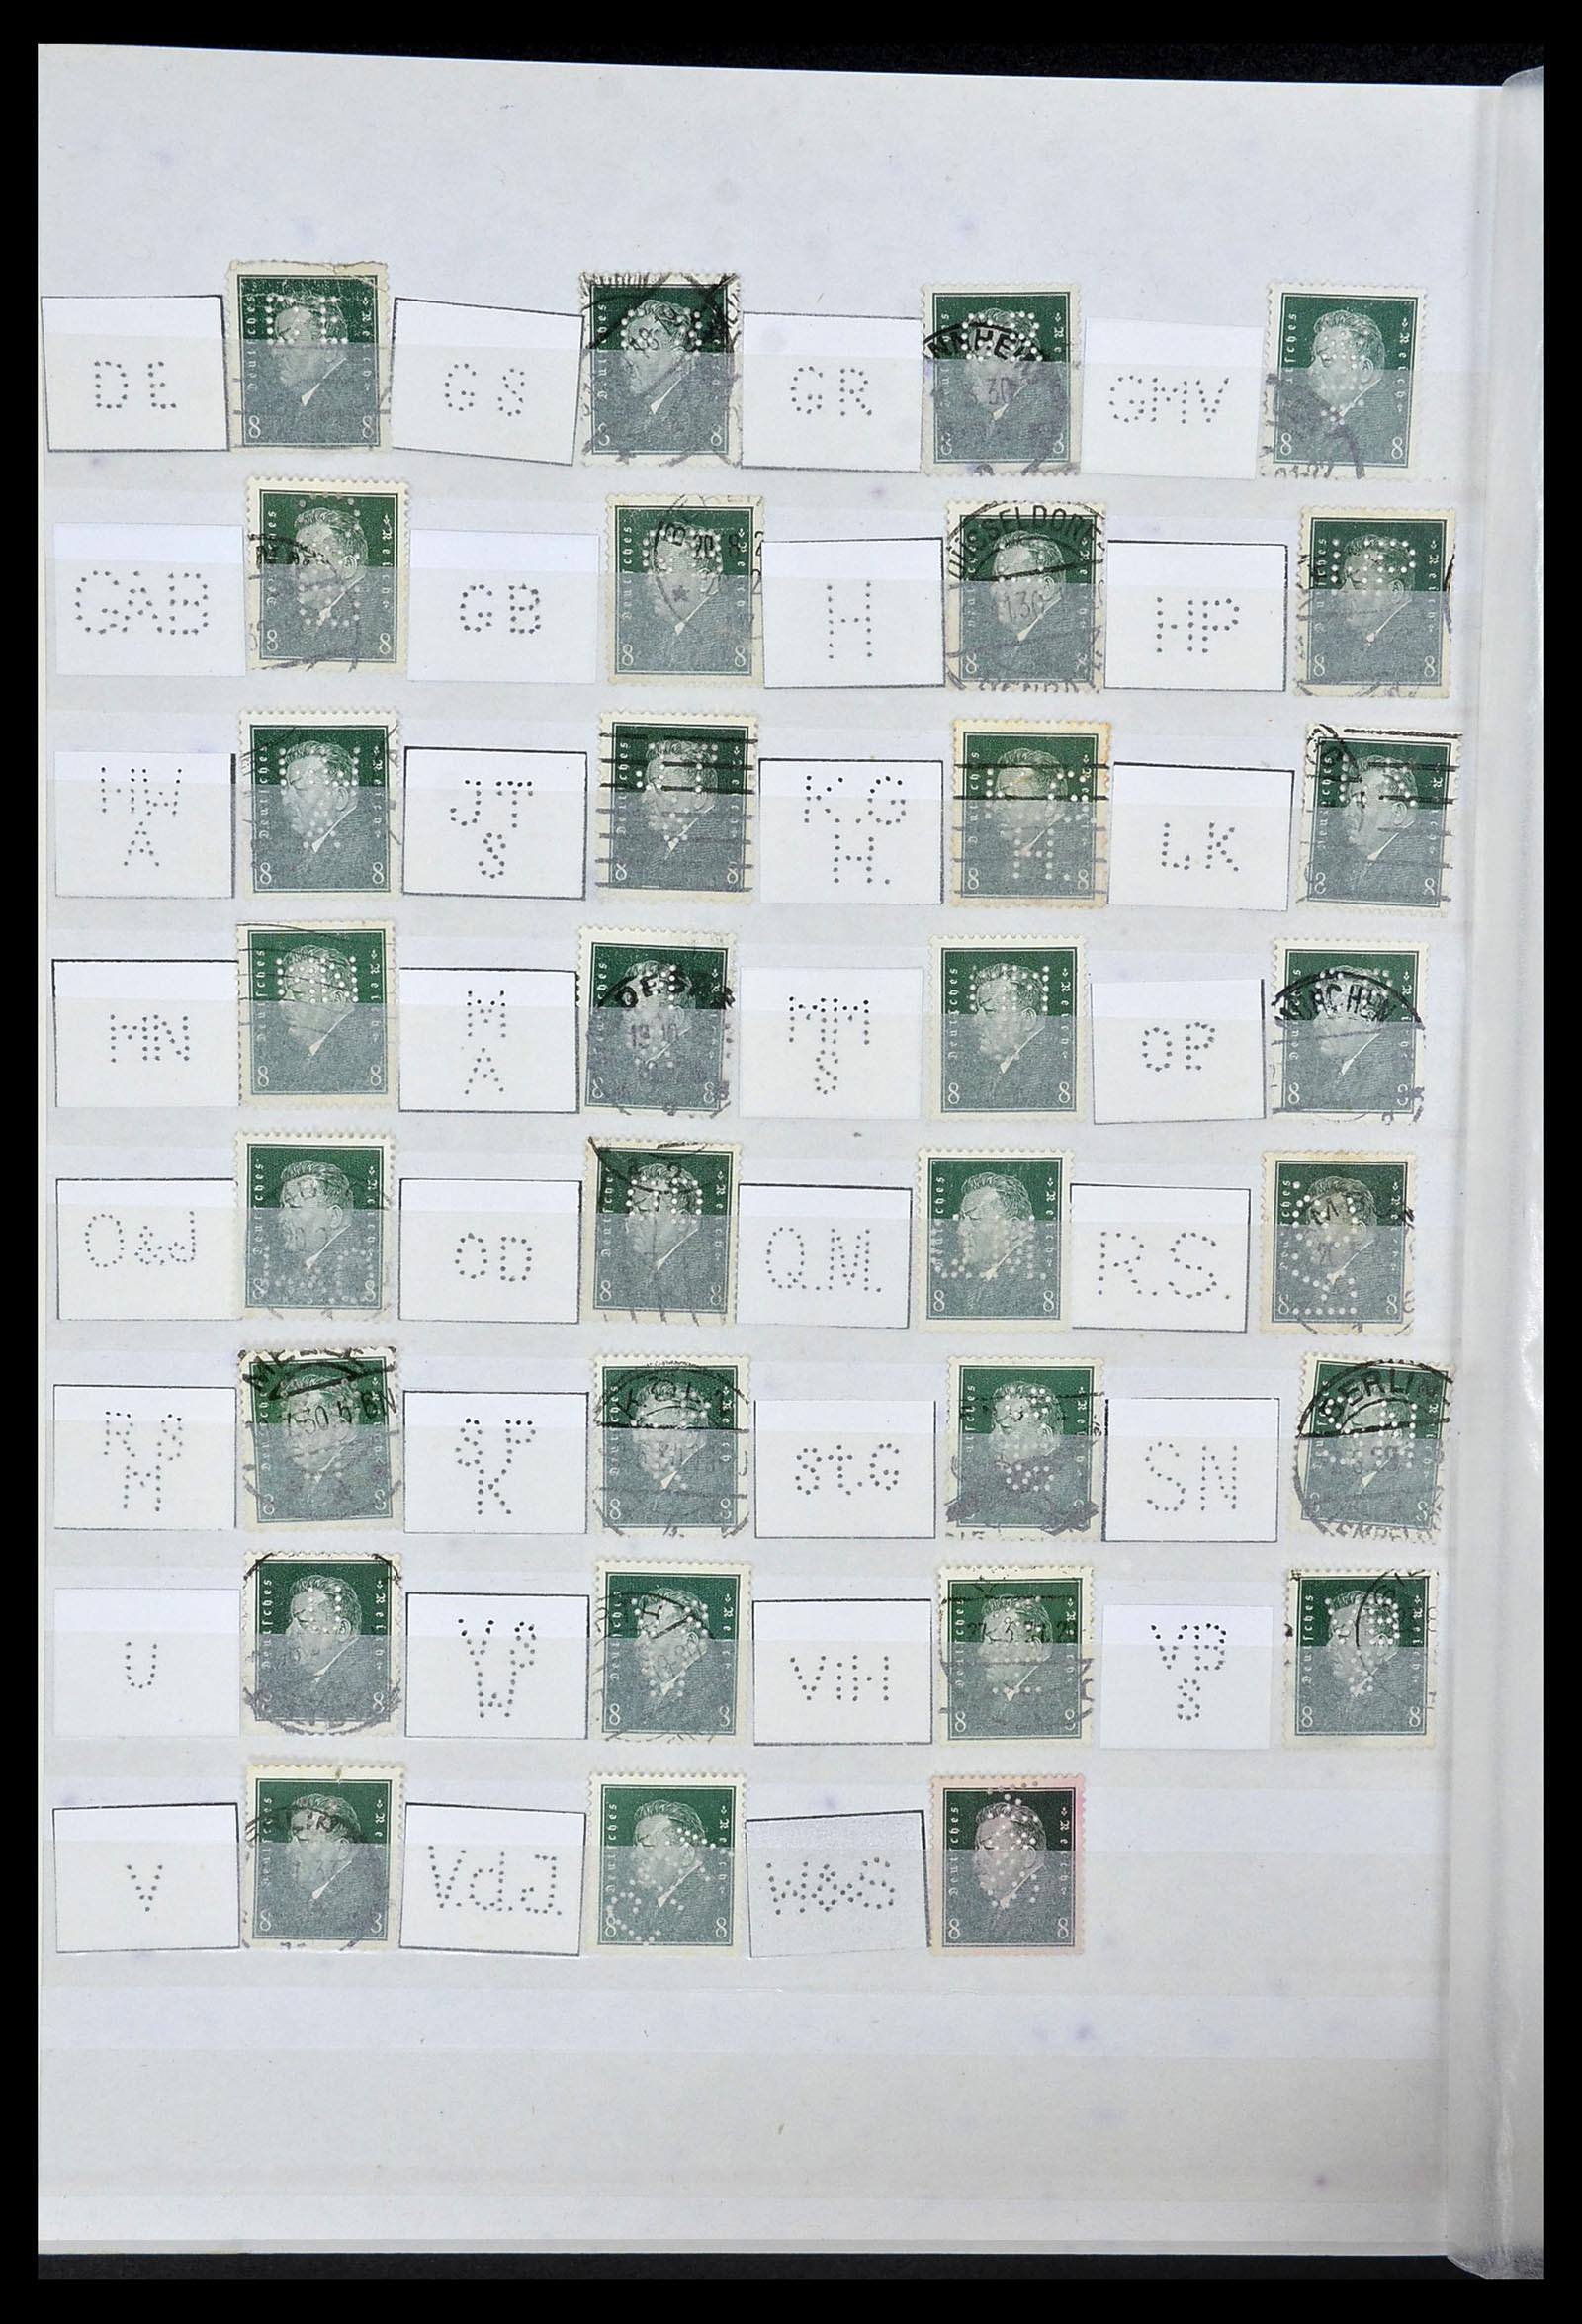 34071 030 - Stamp collection 34071 German Reich perfins 1923-1930.